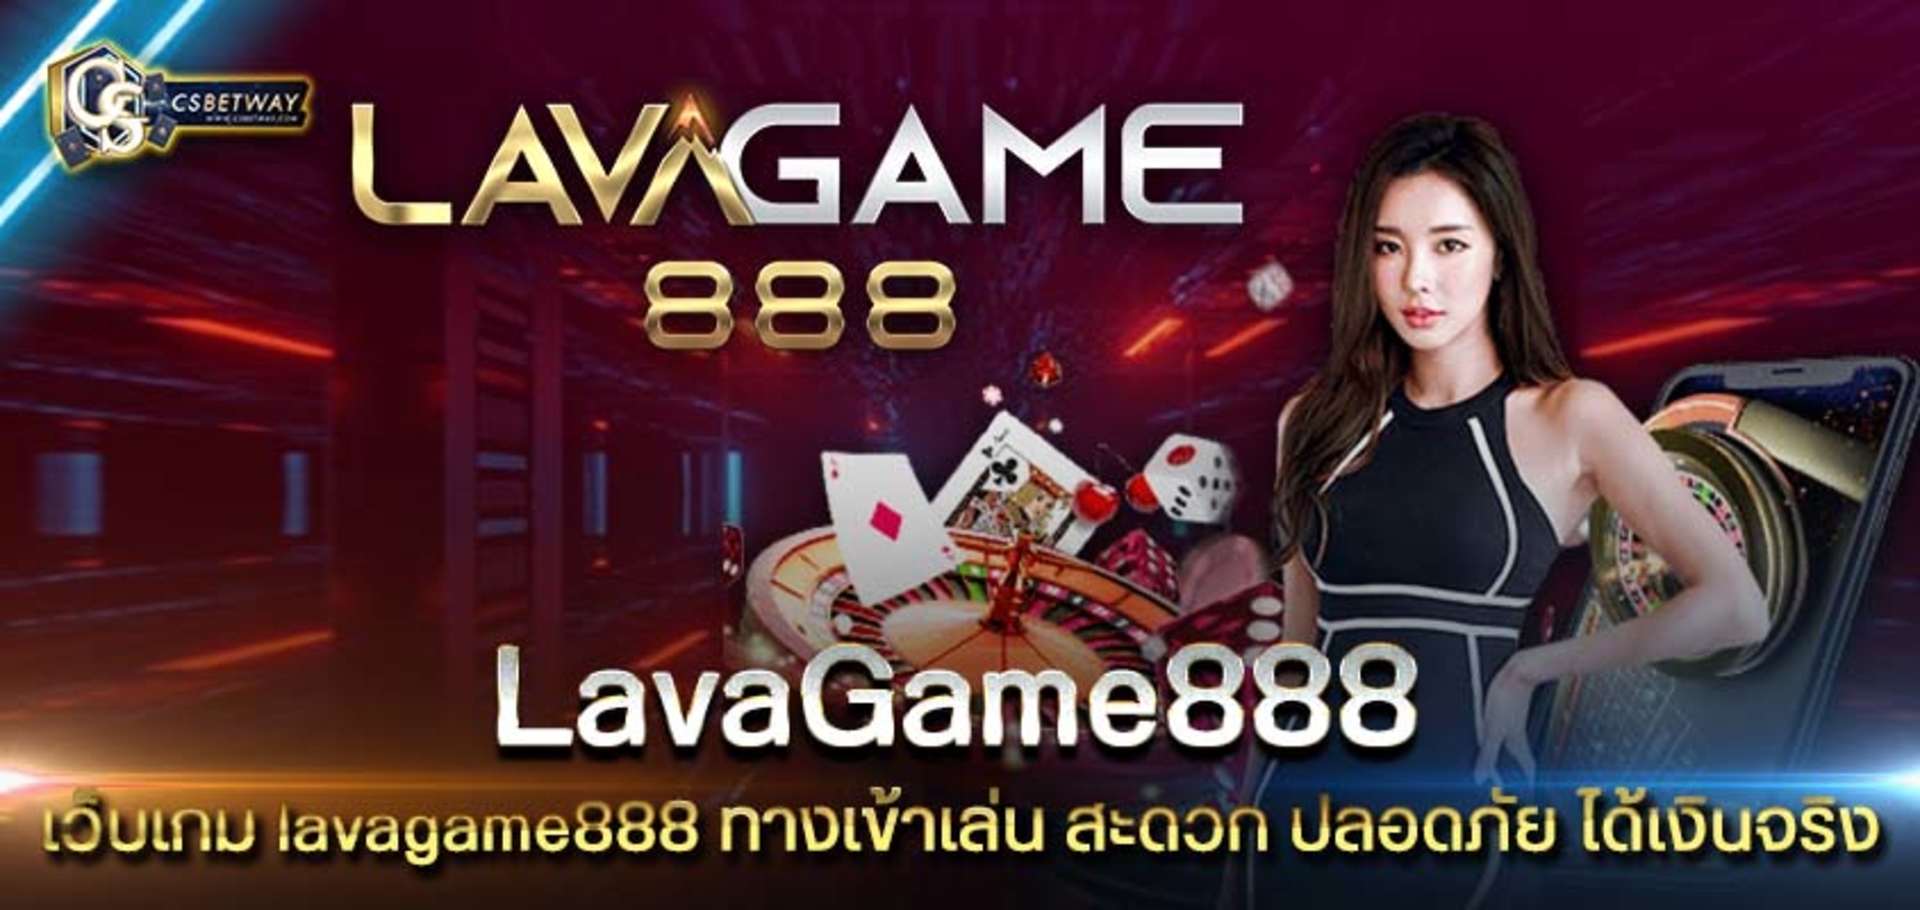 เว็บเกม lavagame888 ทางเข้าเล่น สะดวก ปลอดภัย ได้เงินจริง       